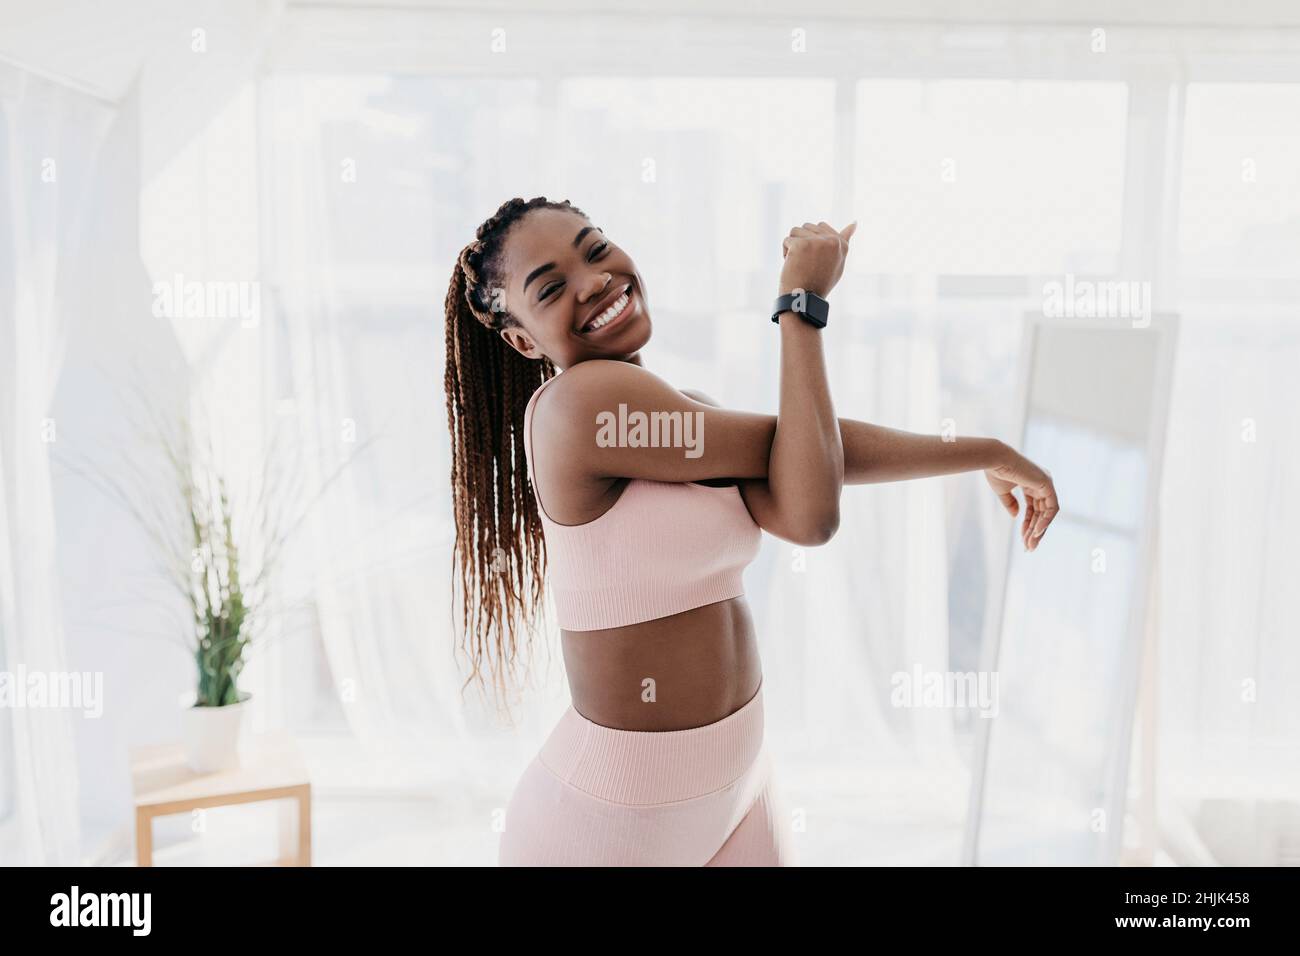 Ritratto di attraente fit afroamericana signora in abbigliamento sportivo che si esercita a casa, allungando il braccio e sorridendo alla macchina fotografica Foto Stock